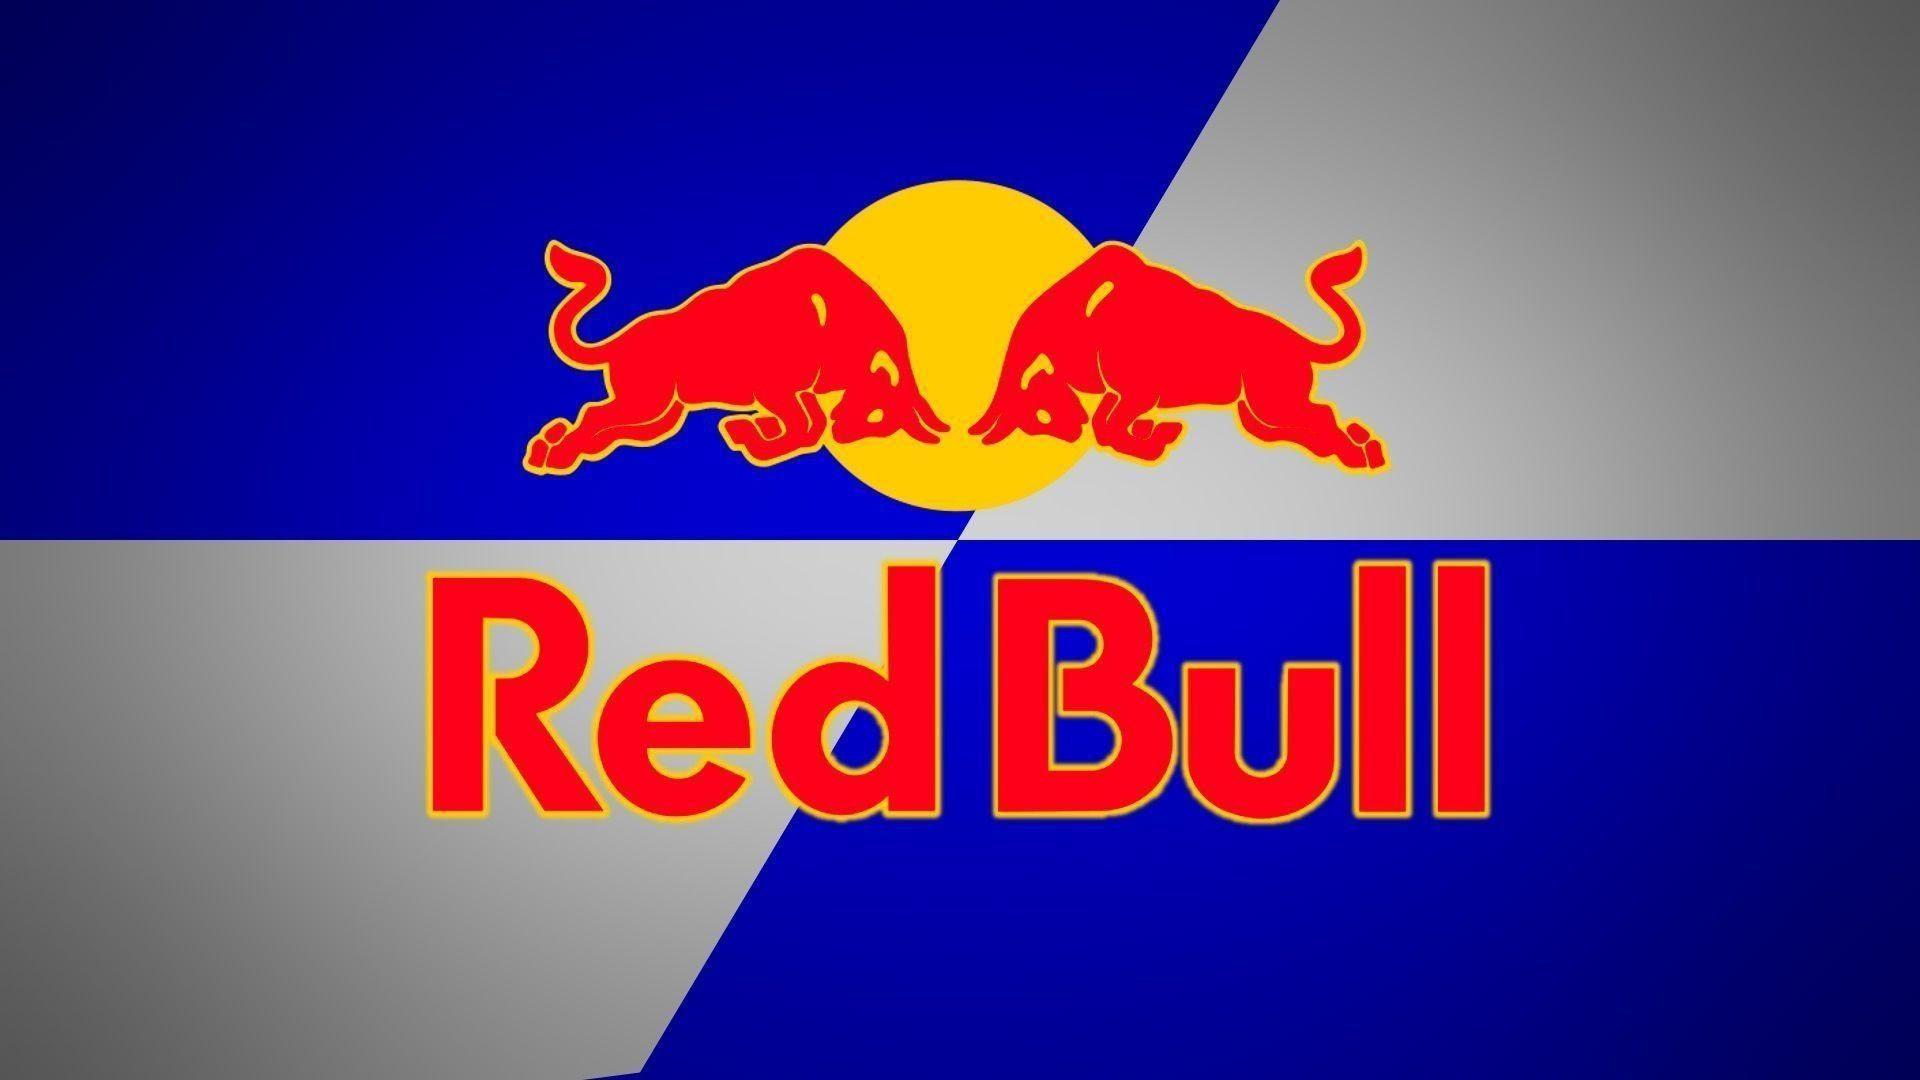 Latest Red Bull Logo Wallpaper FULL HD 1080p For PC Background